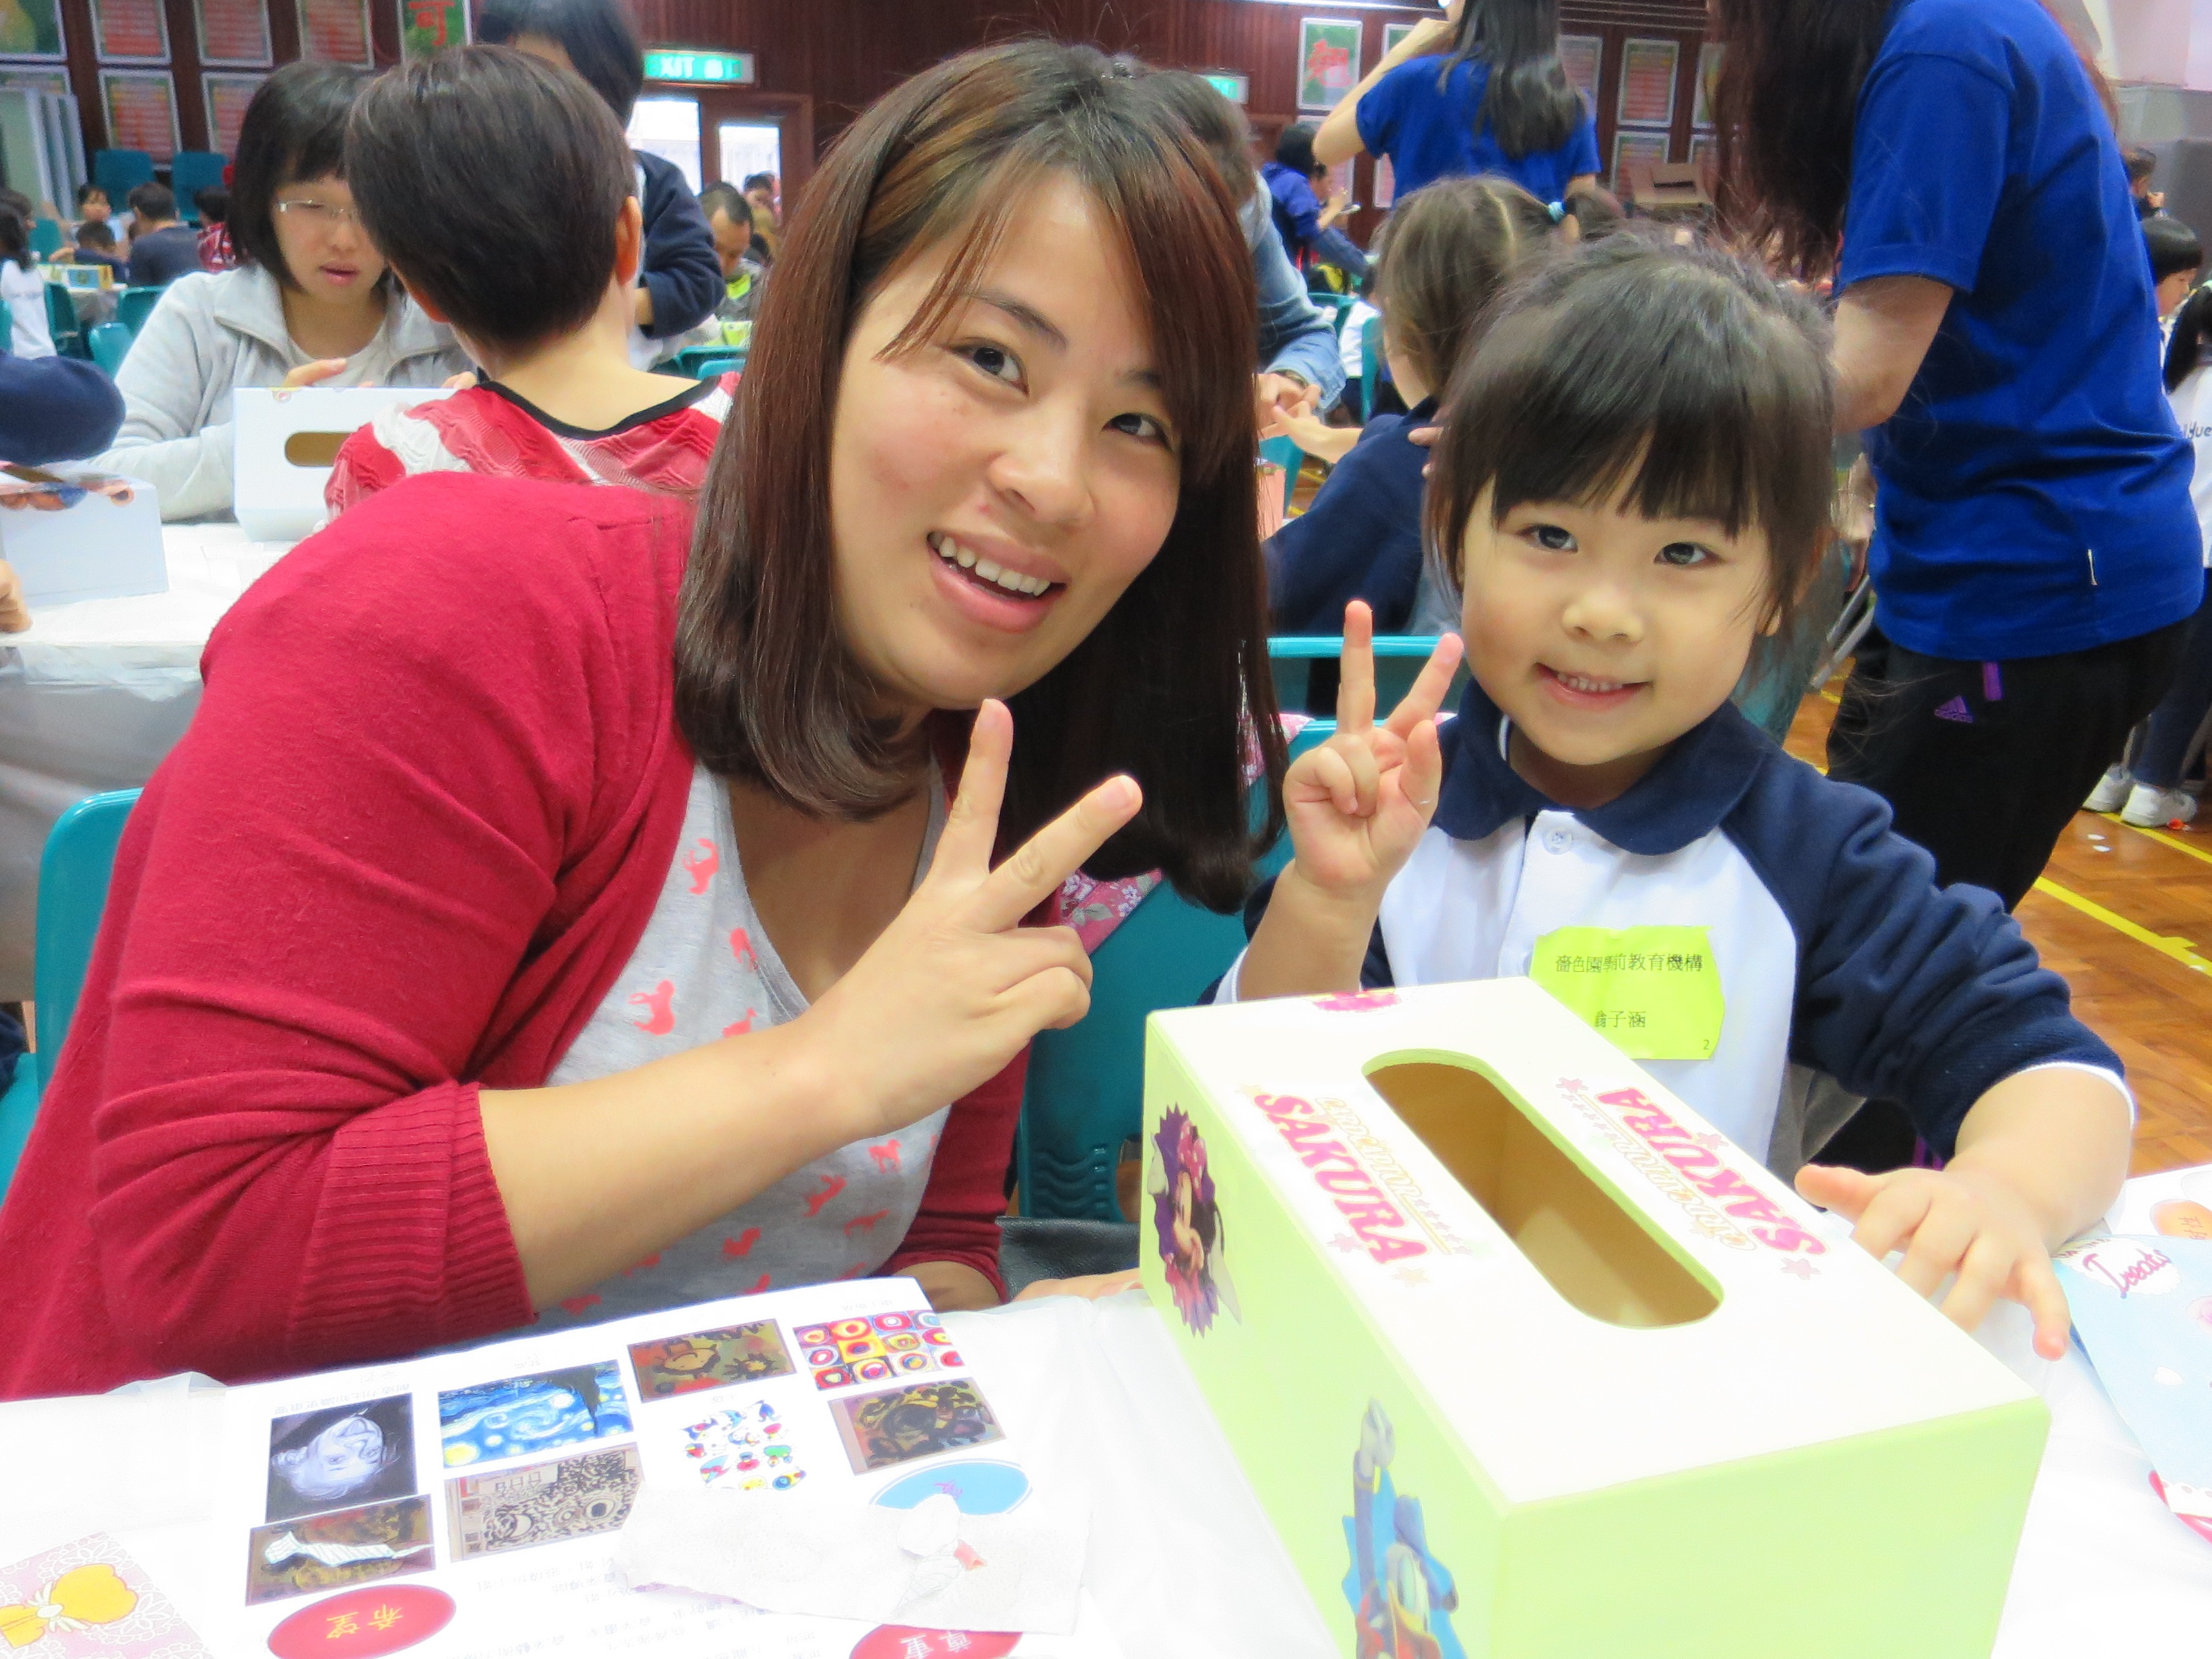 Parents-Child Arts Workshop for Sik Sik Yuen Kindergartens